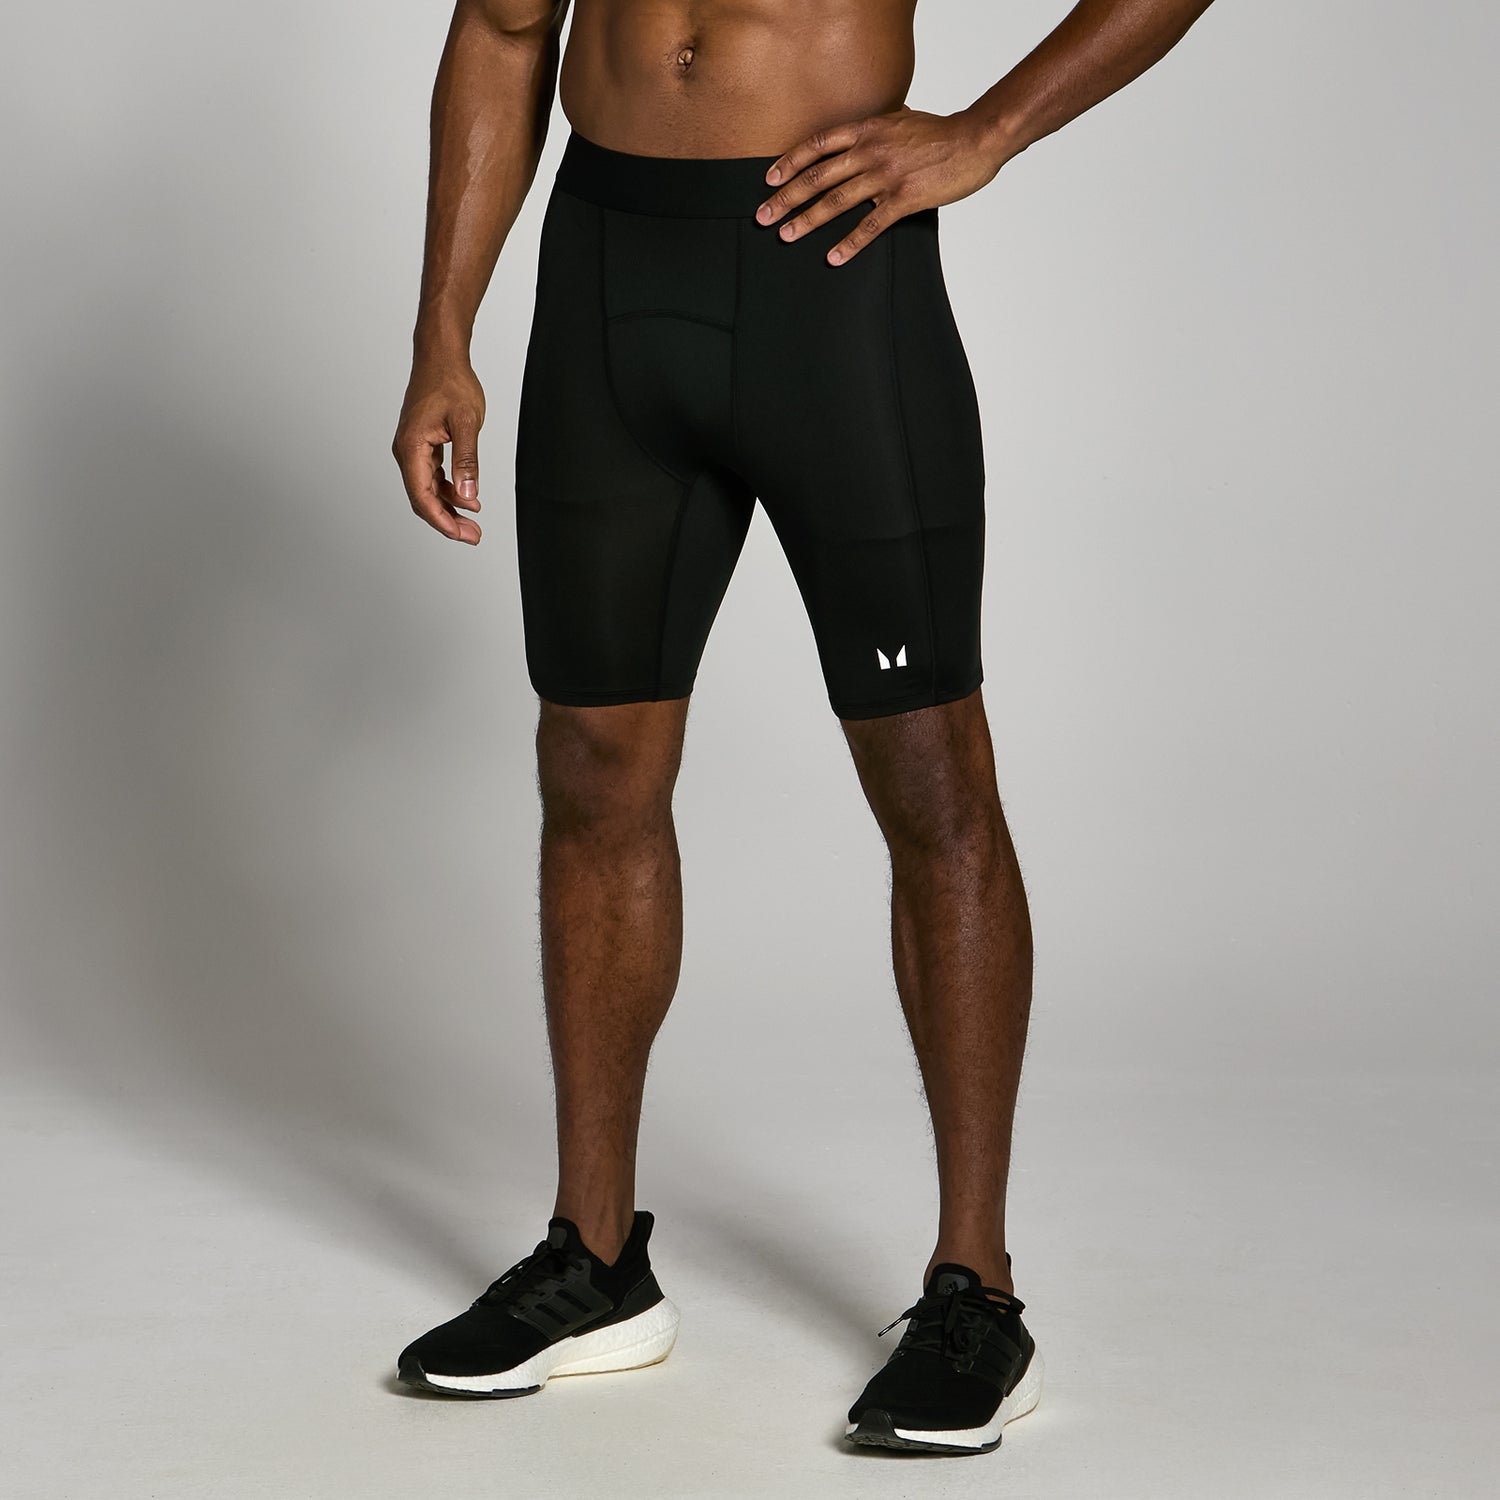 Мужские компрессионные спортивные шорты MP Training — черный цвет - S